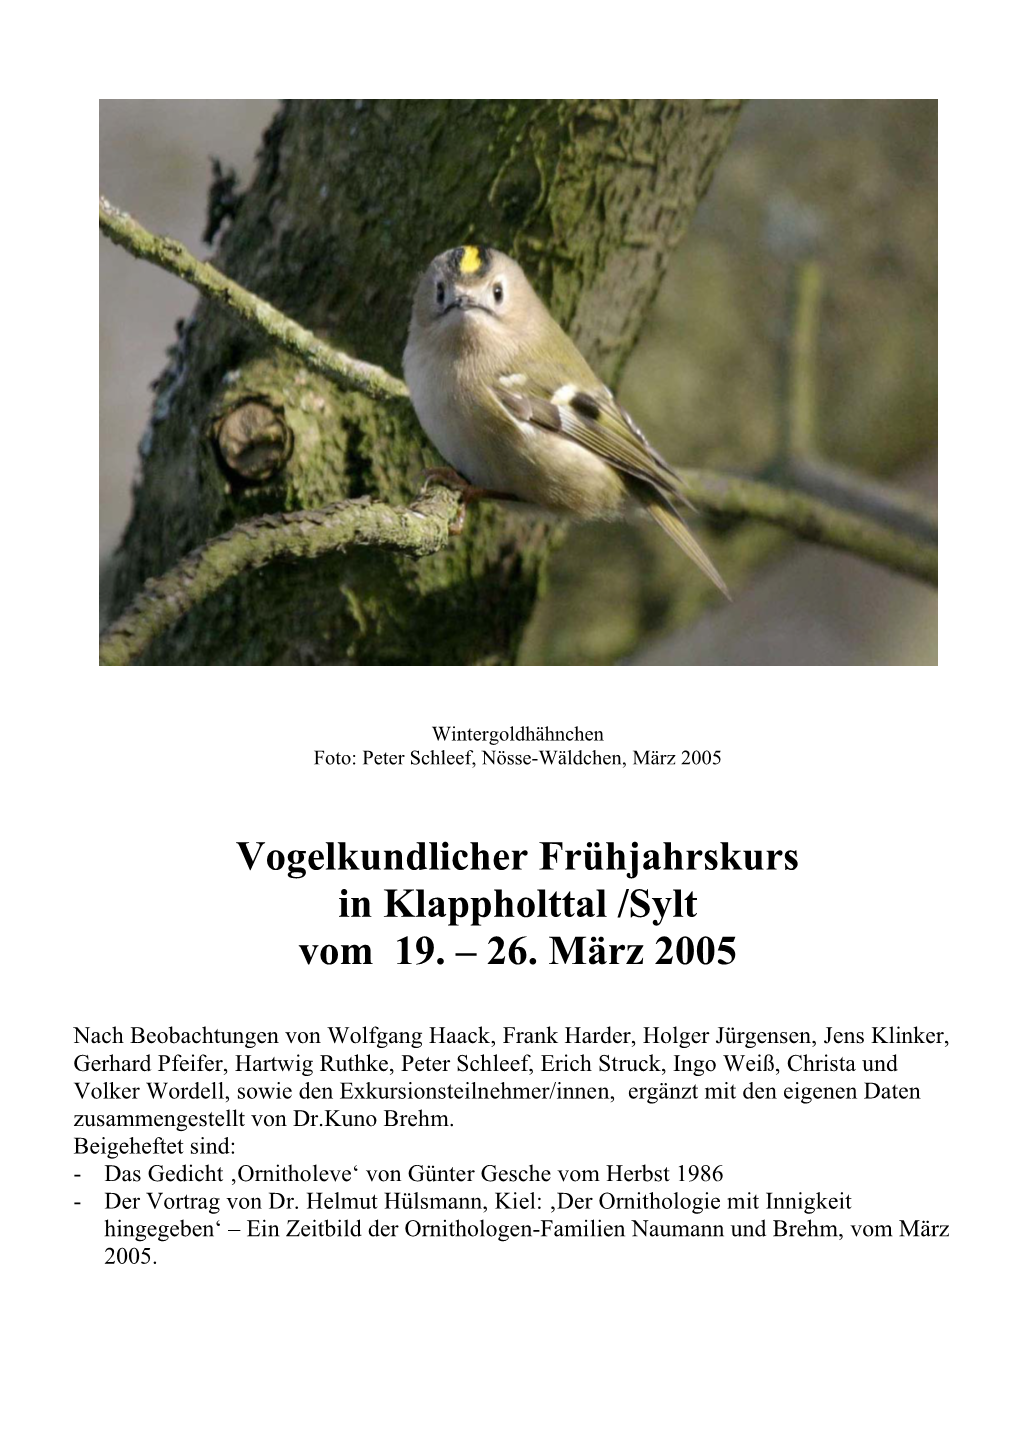 Vogelkundlicher Frühjahrskurs in Klappholttal /Sylt Vom 19. – 26